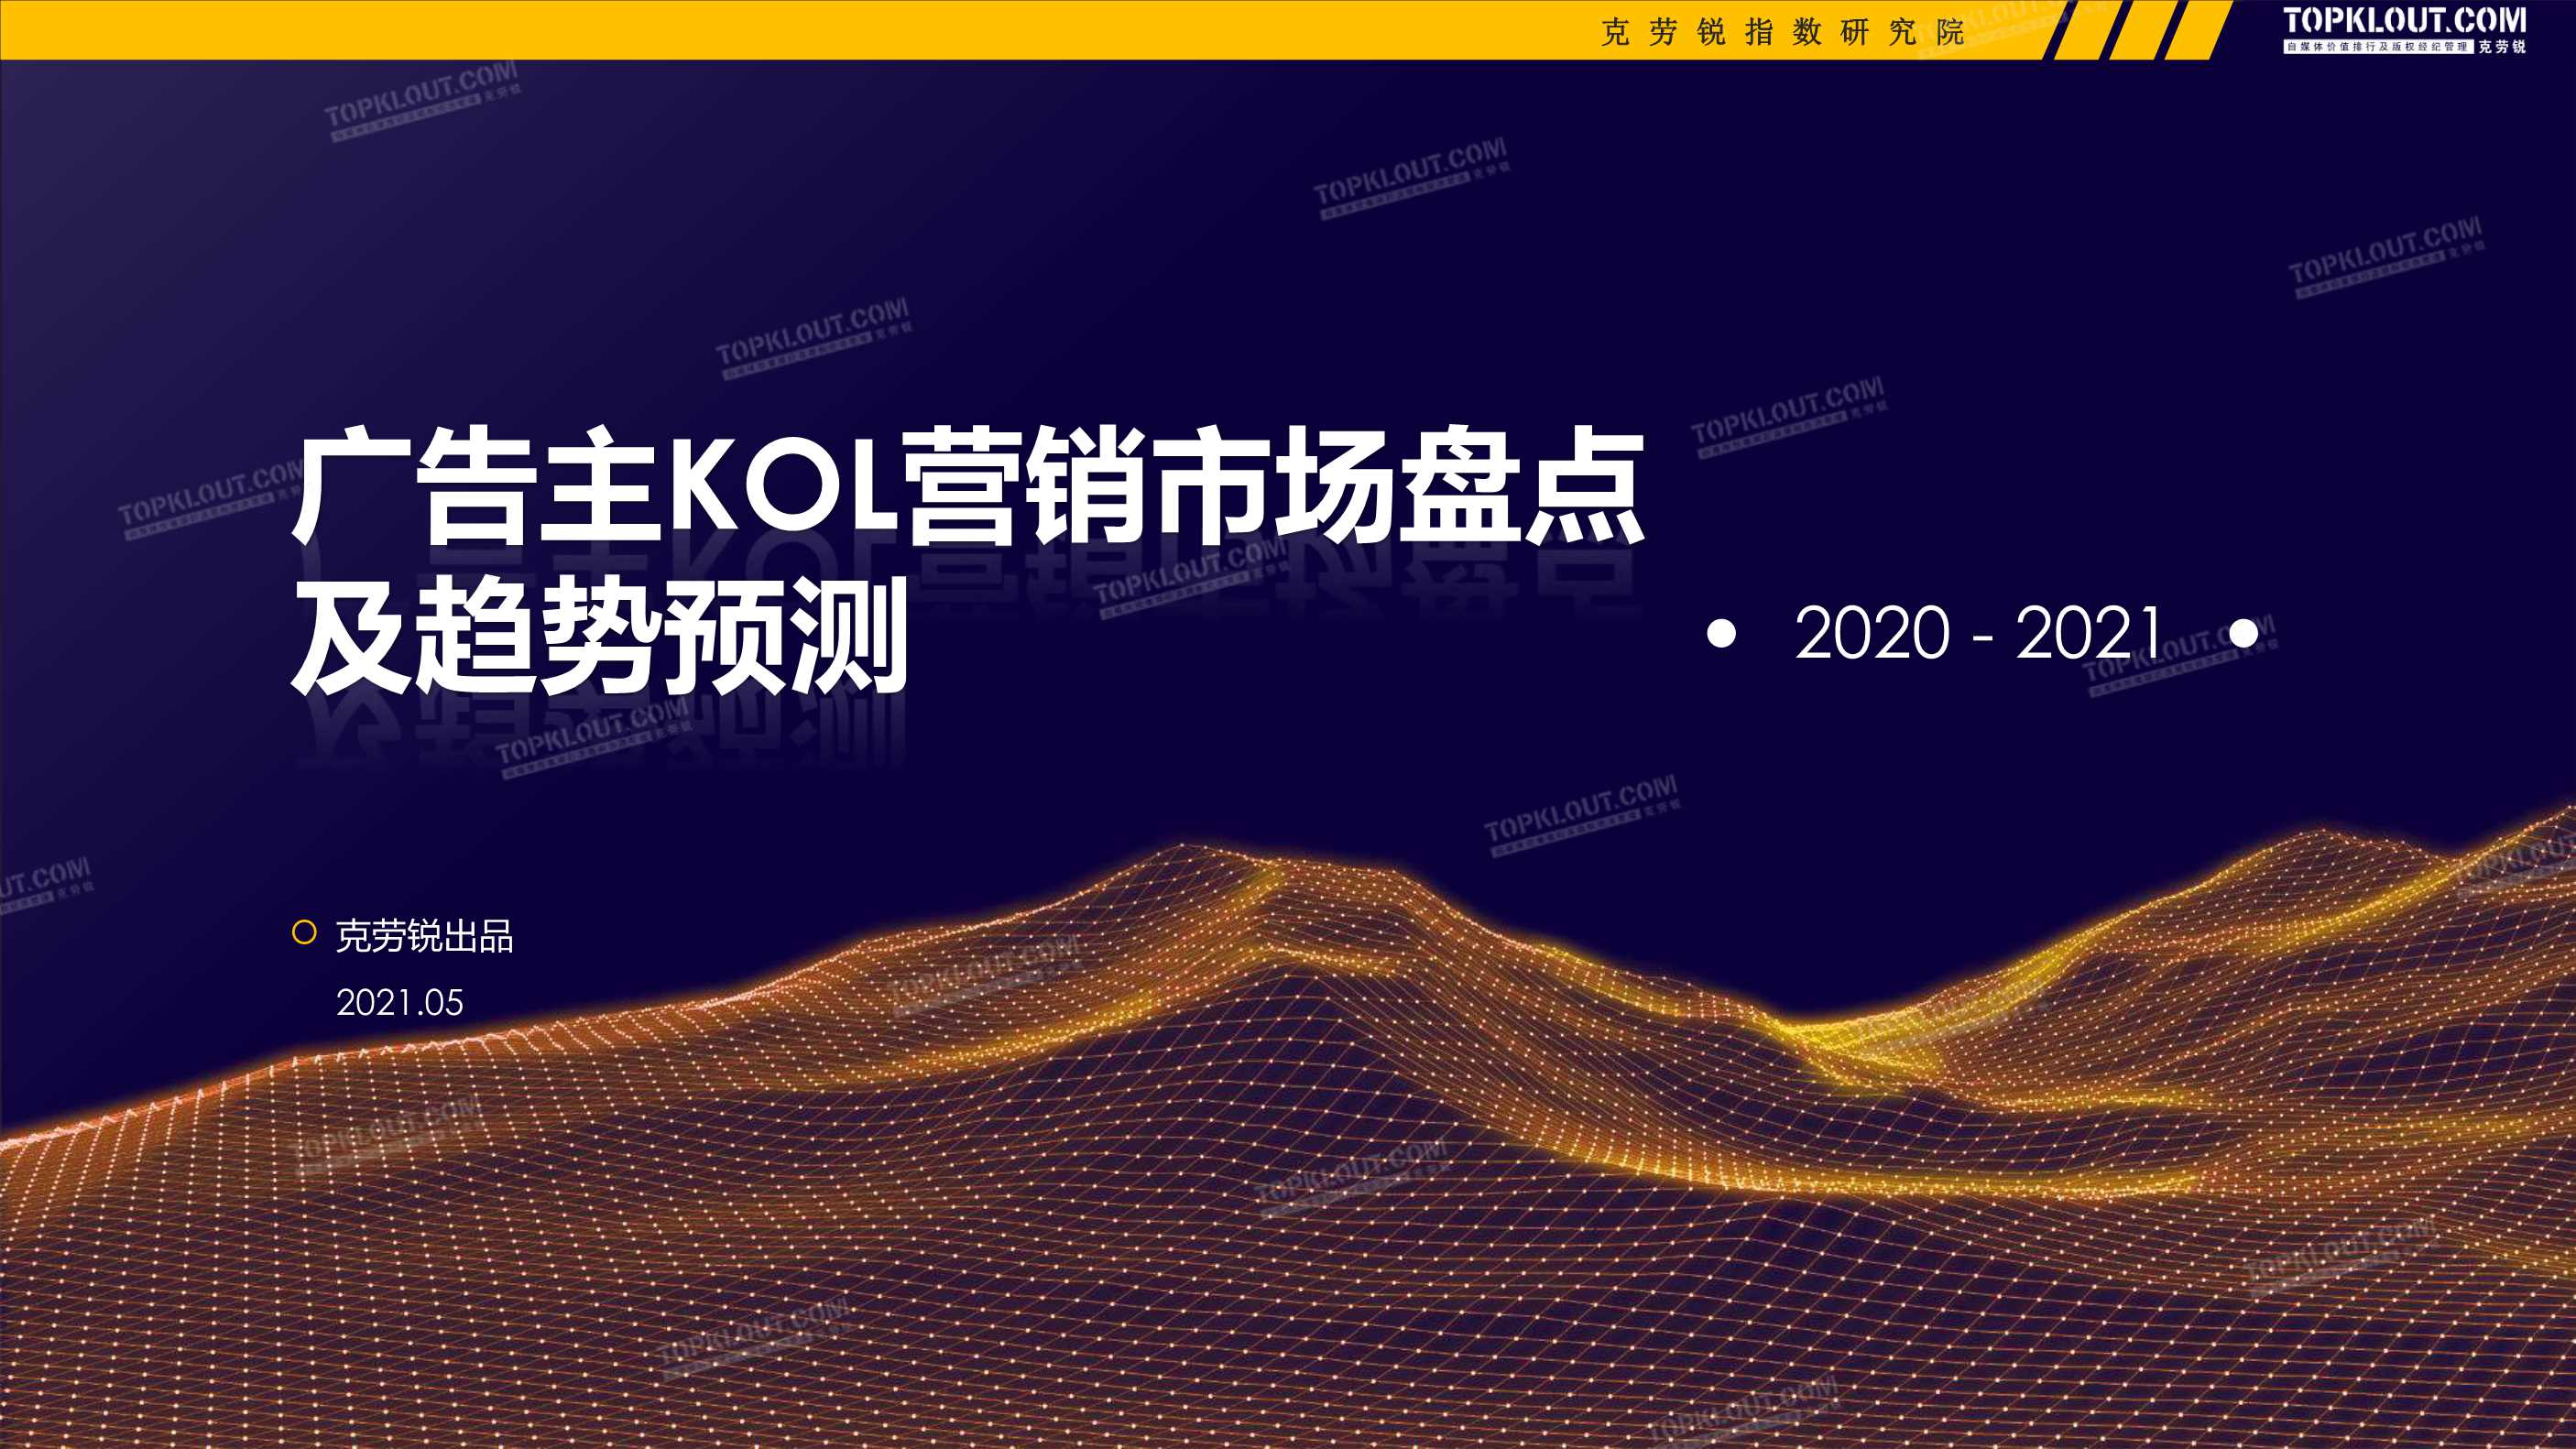 克劳锐-2020-2021广告主KOL营销市场盘点及趋势预测-2021.05-86页